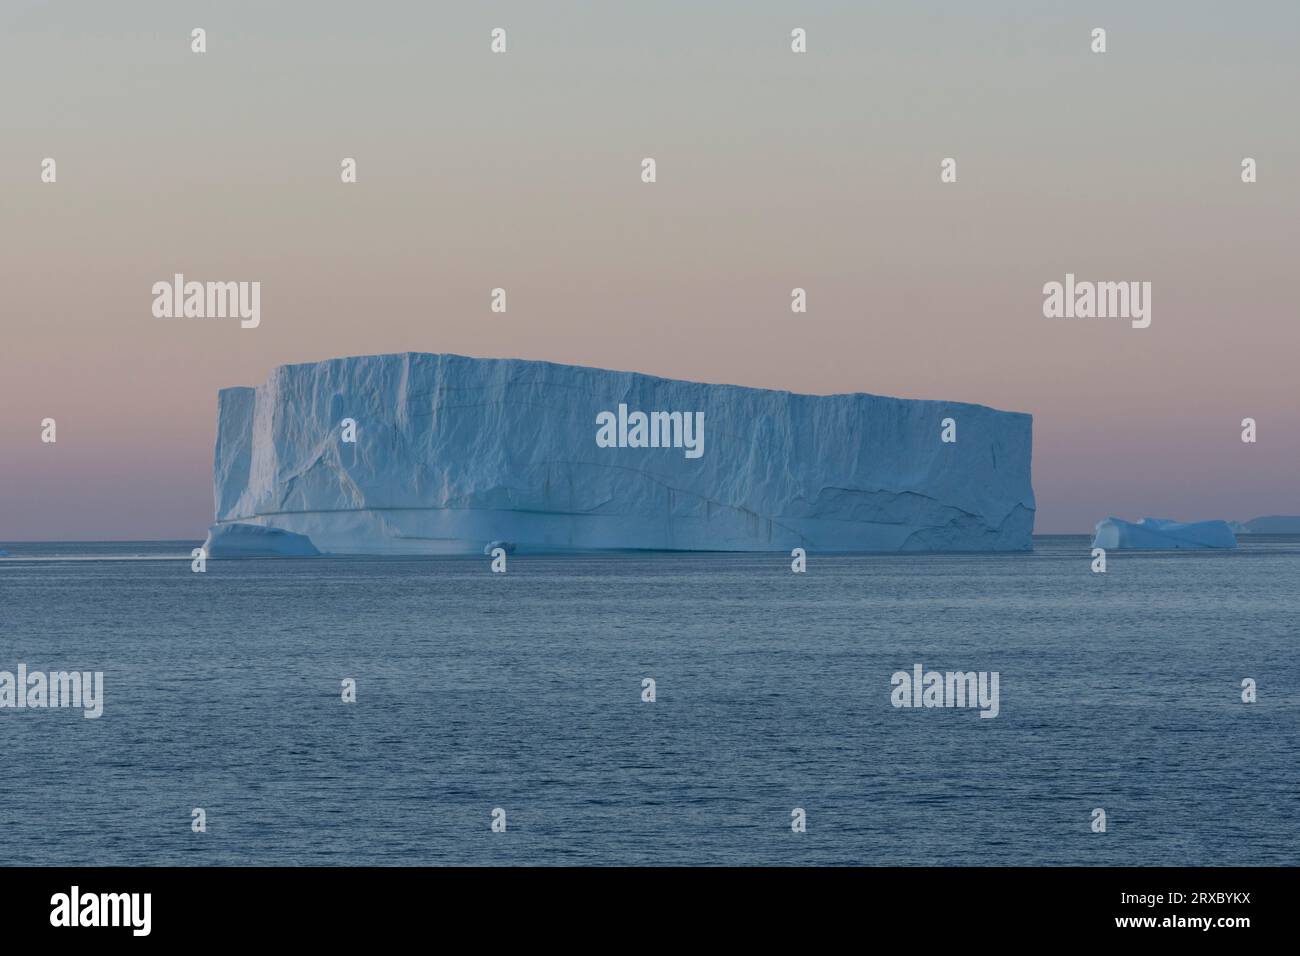 Wunderschöner Sonnenuntergang in Disko Bay. Schwimmender Eisberg in der niedrigen arktischen Abendsonne. Disko Bay, Qeqertarsuup Tunua, Baffin Bay, Grönland, Dänemark, Europa Stockfoto